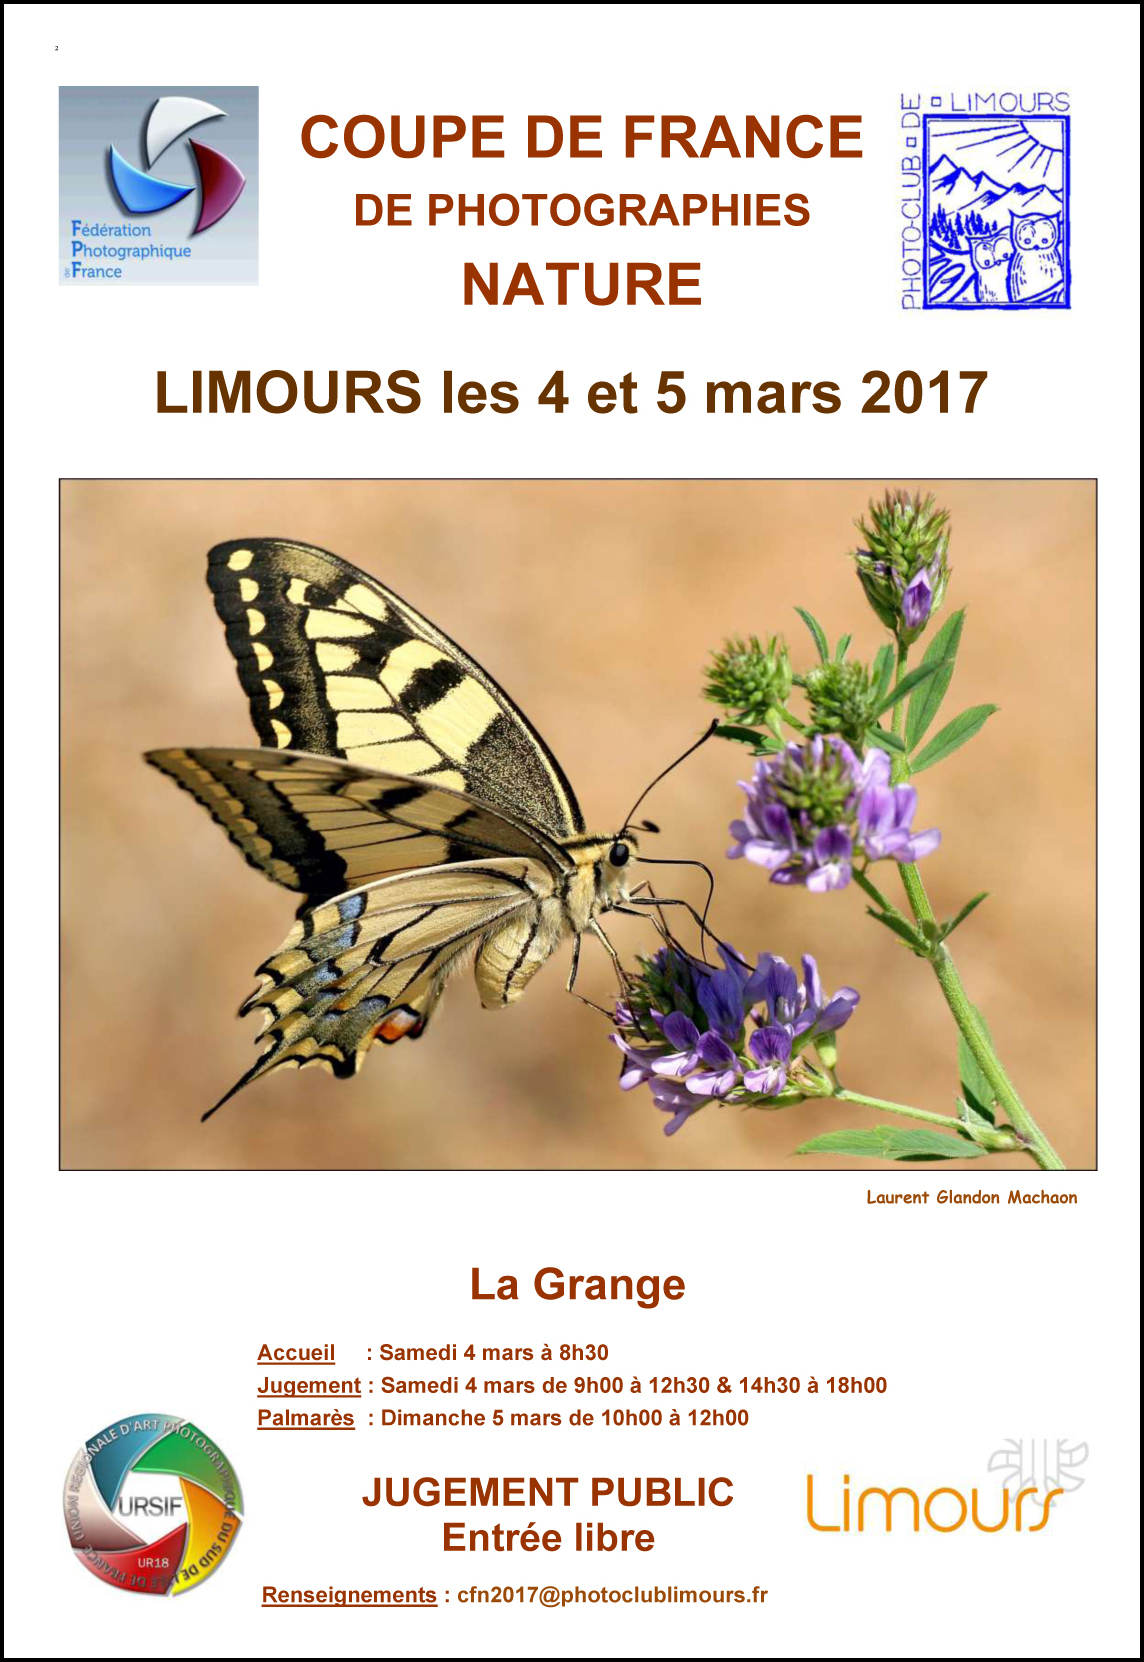 Coupe de France de Photographie Nature les 4 et 5 mars 2017 à Limours